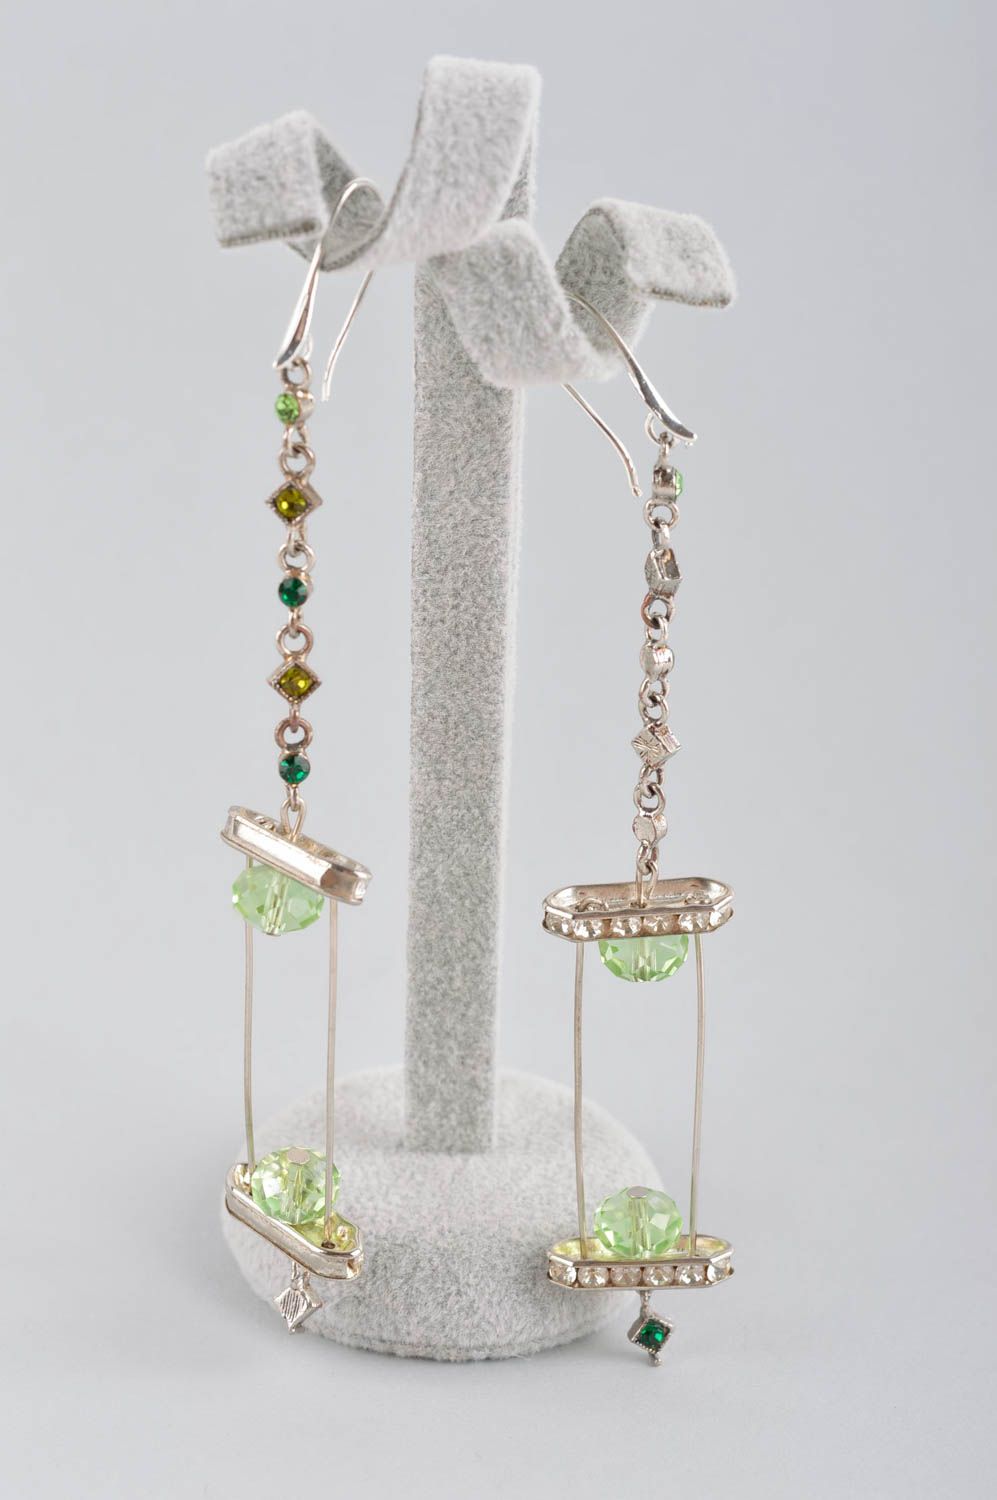 Handmade earrings fashion jewelry dangling earrings best gifts for women photo 2